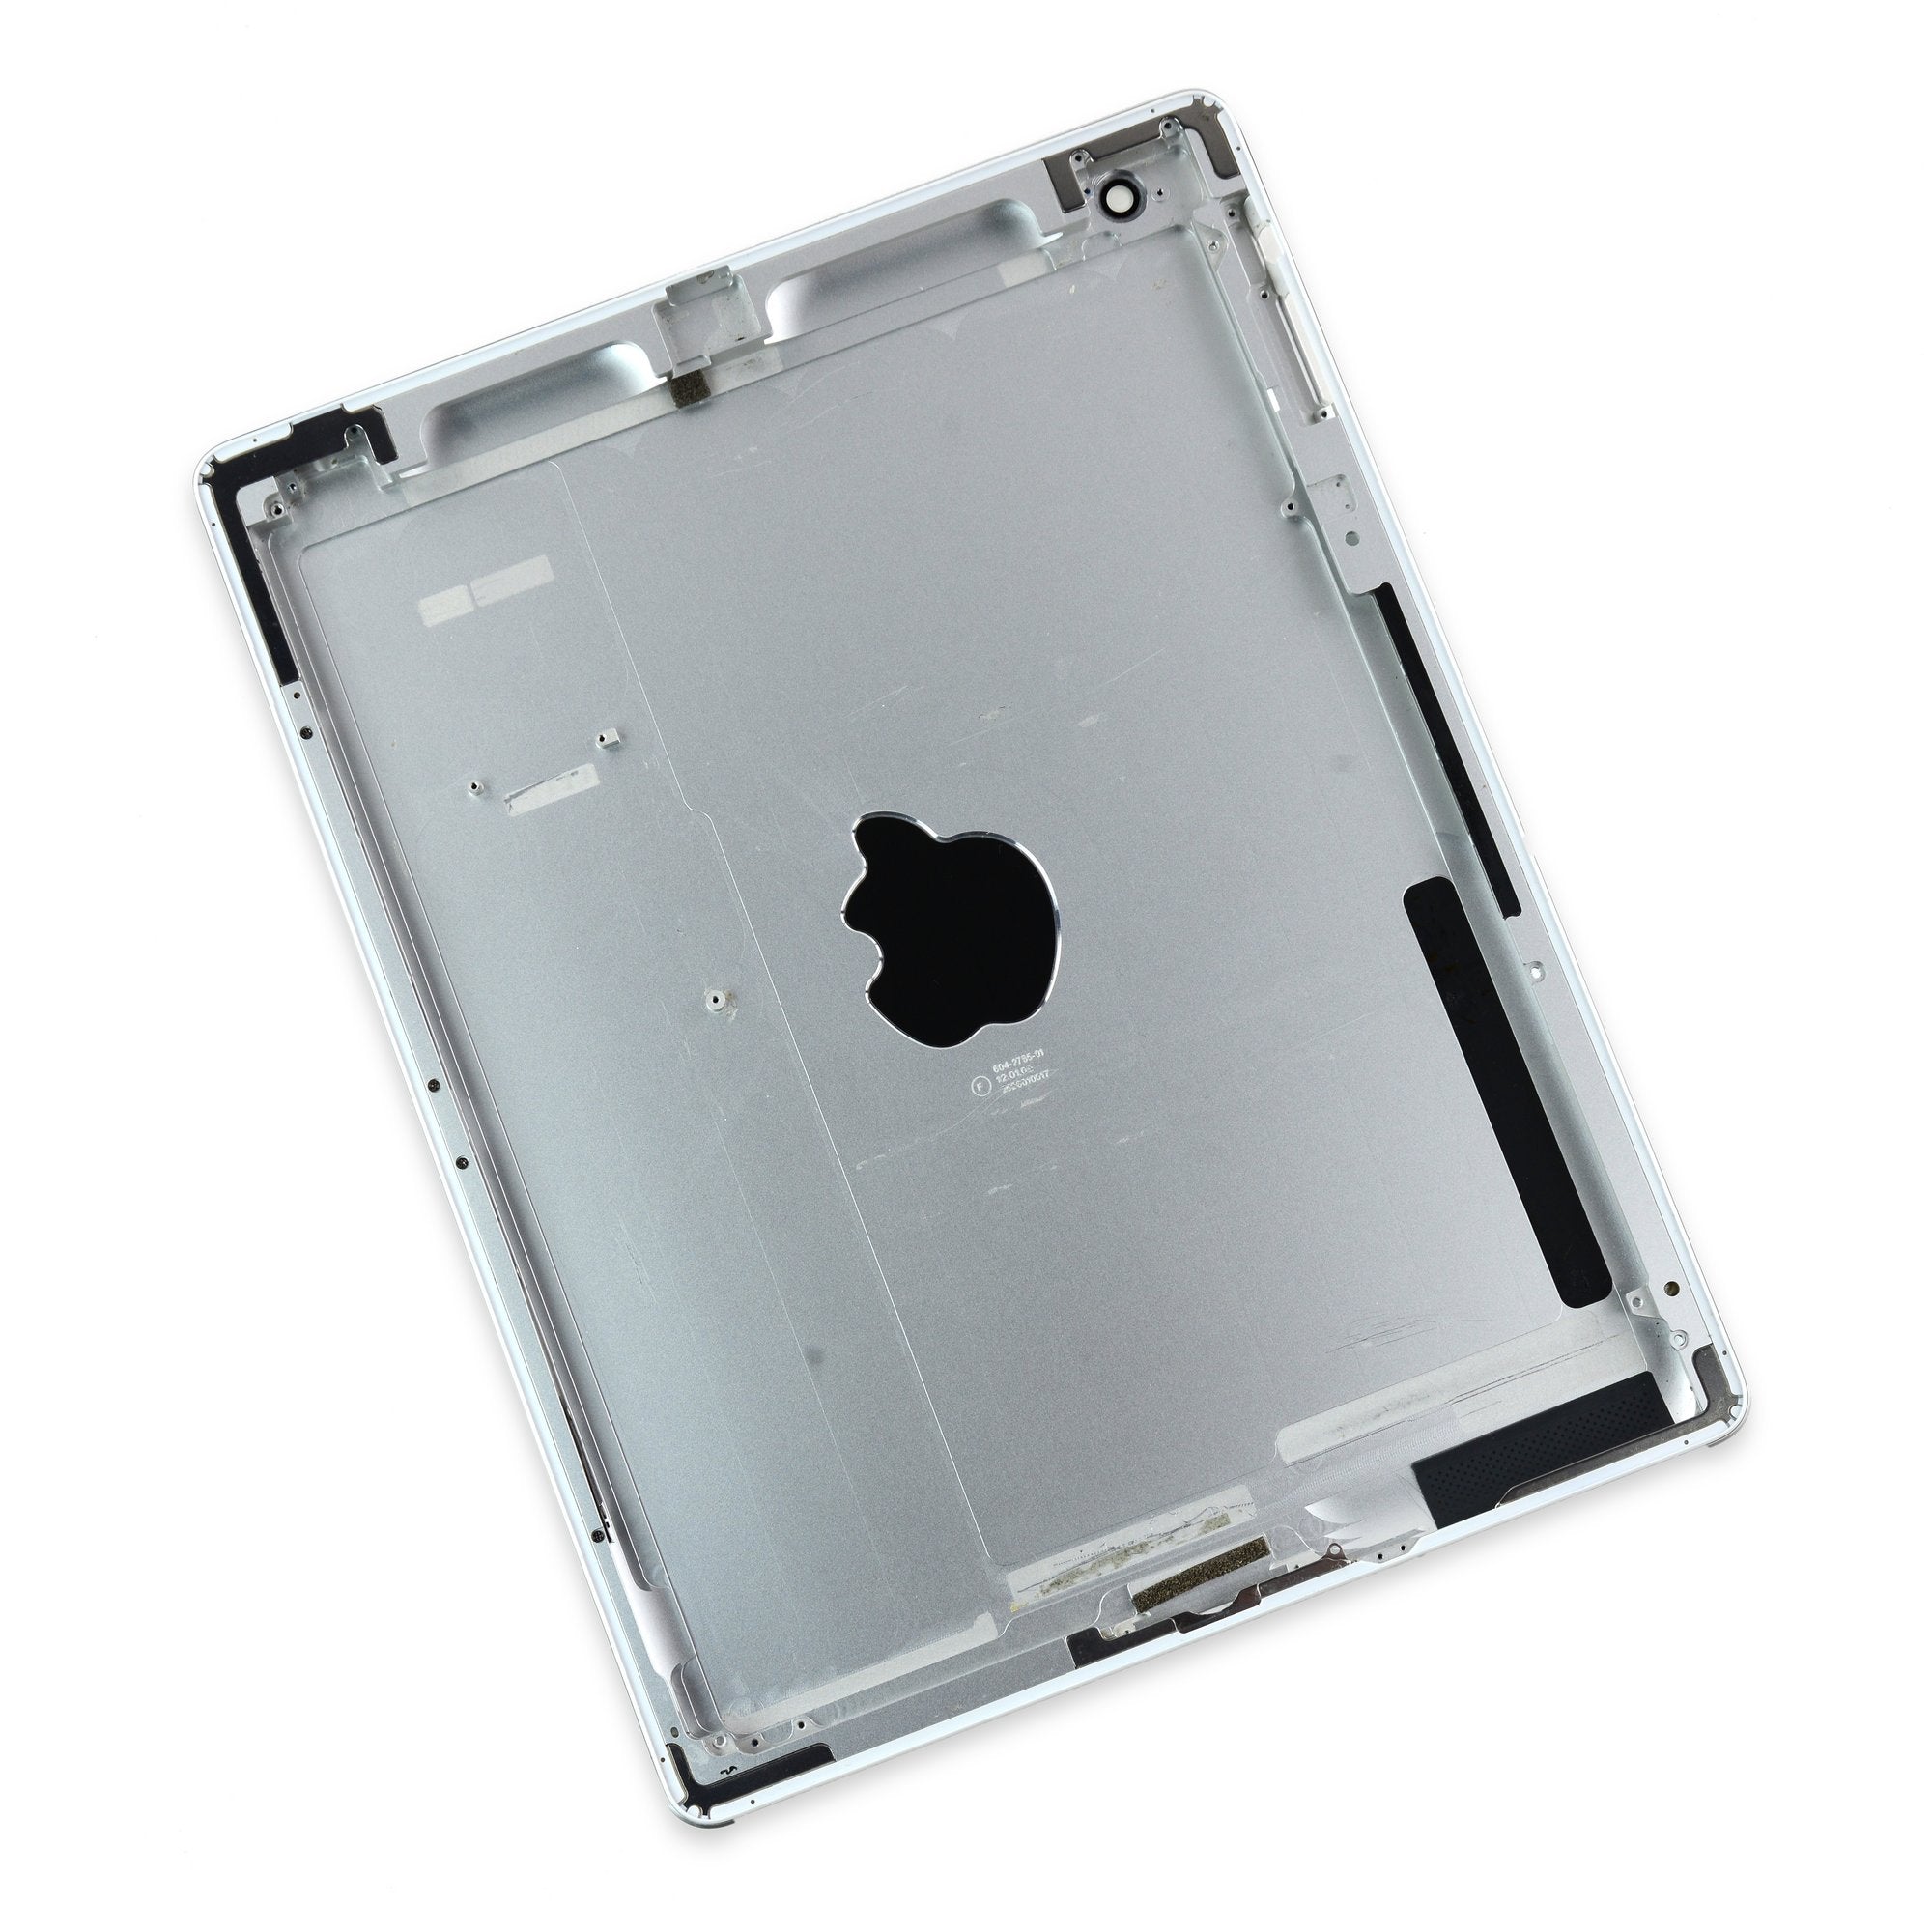 iPad 2 Wi-Fi (EMC 2415) Rear Panel